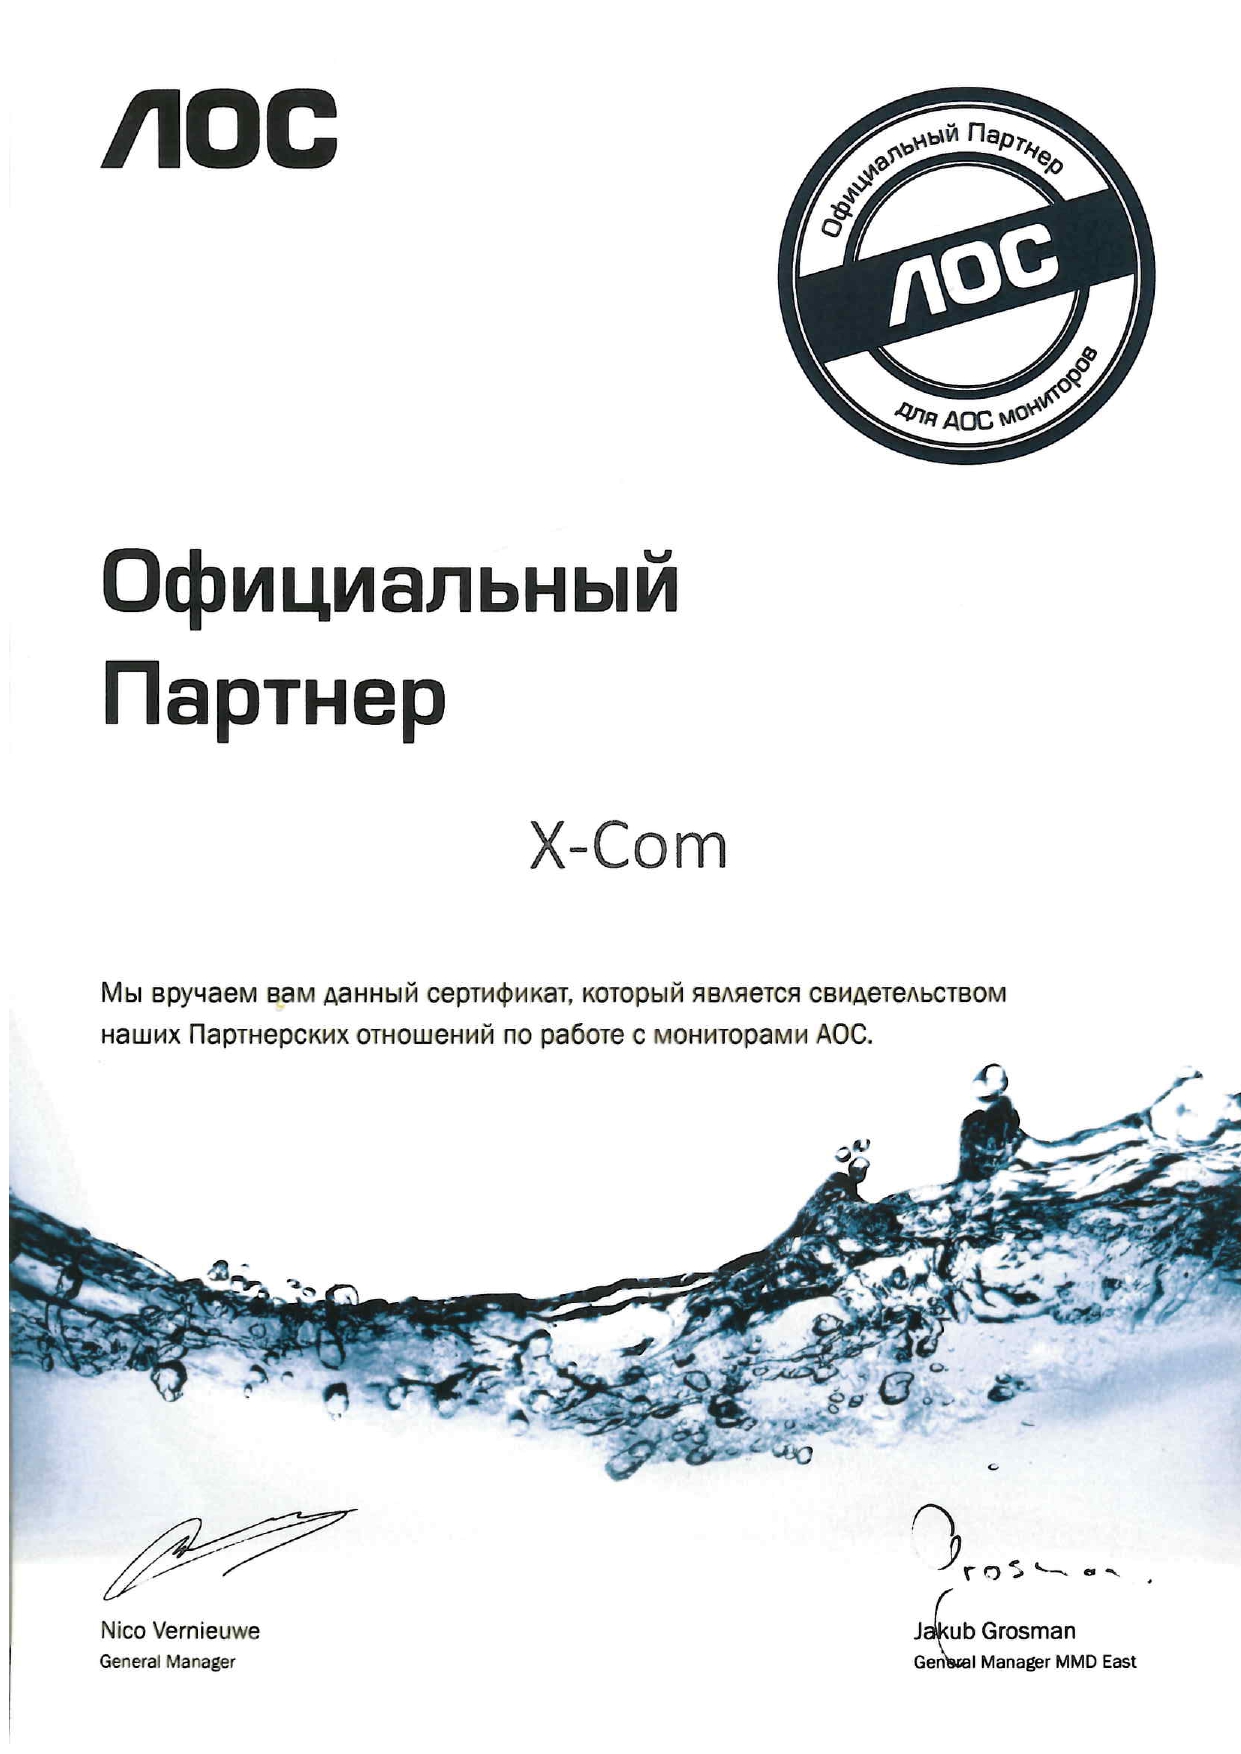 X-Com официальный партнер AOC International